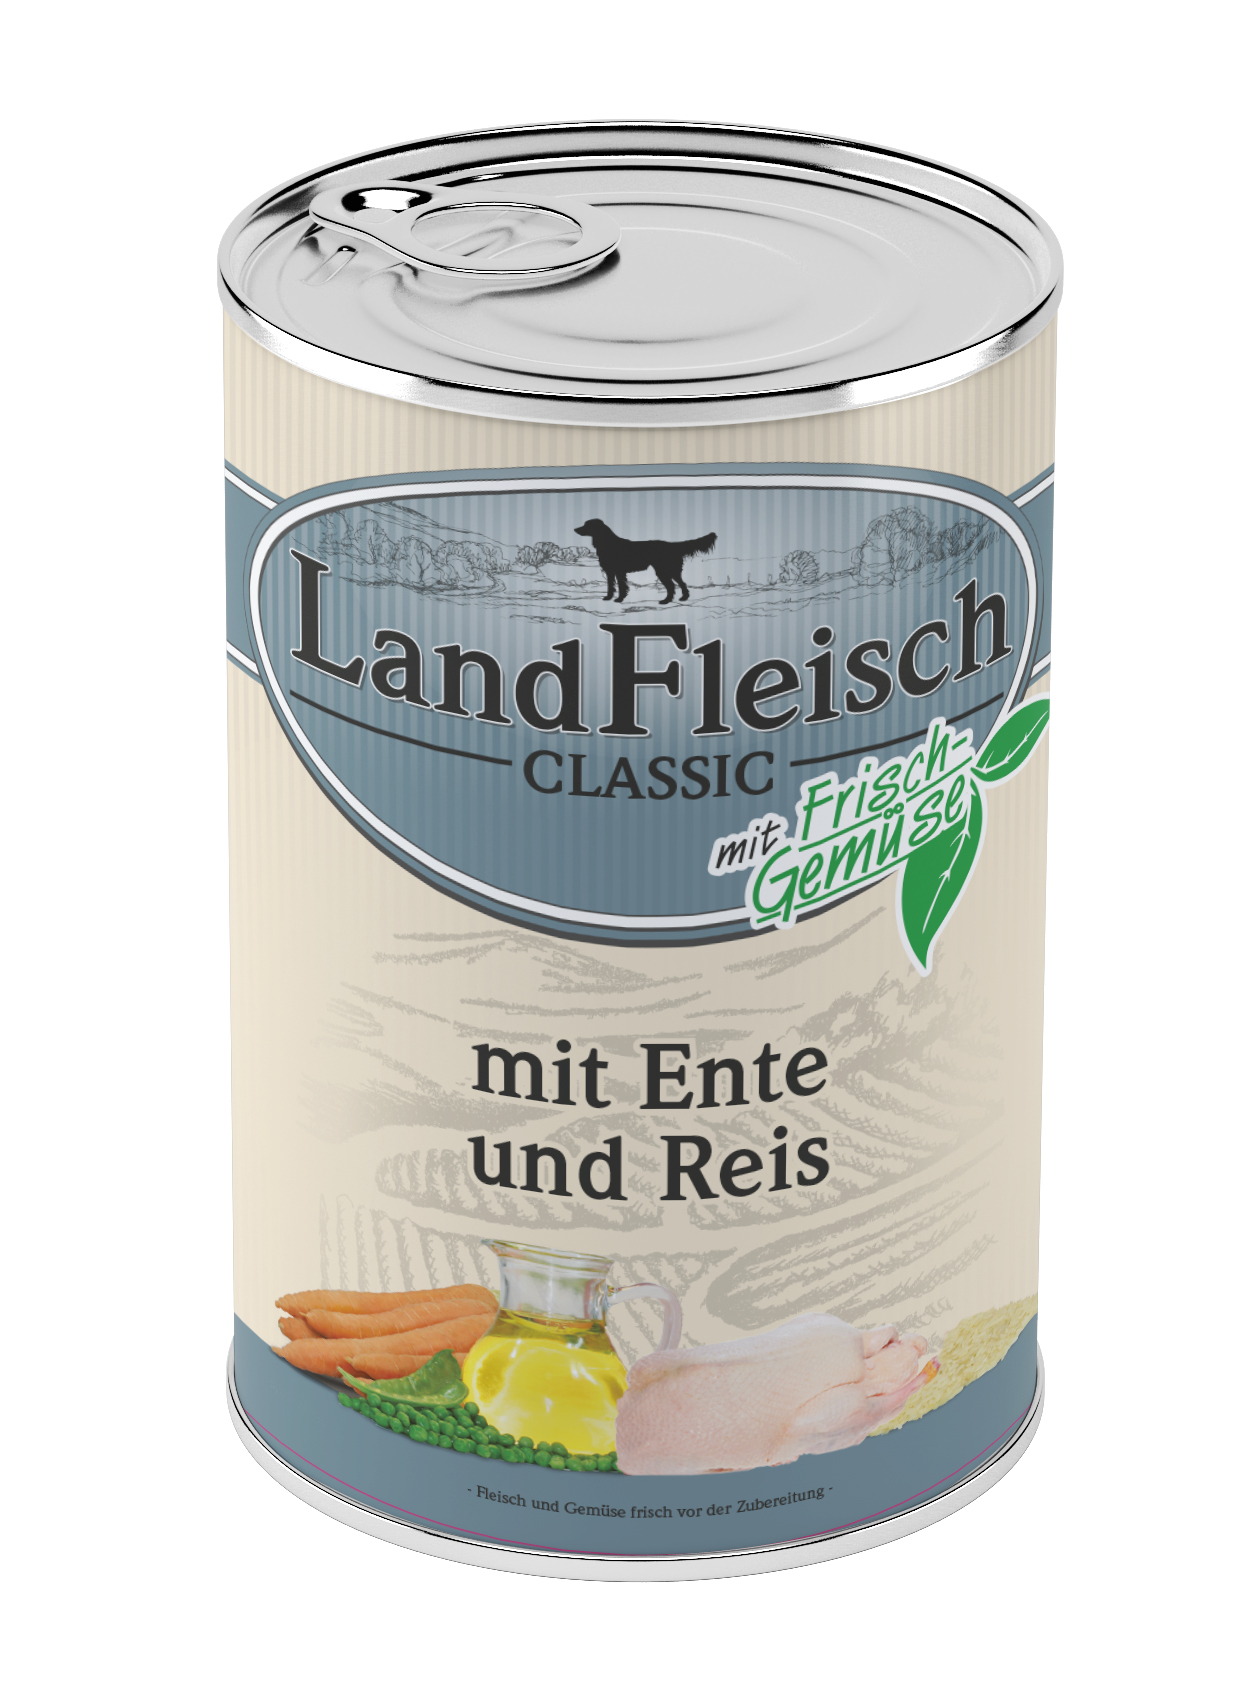 LandFleisch Classic Ente & Reis mit Frischgemüse 400g